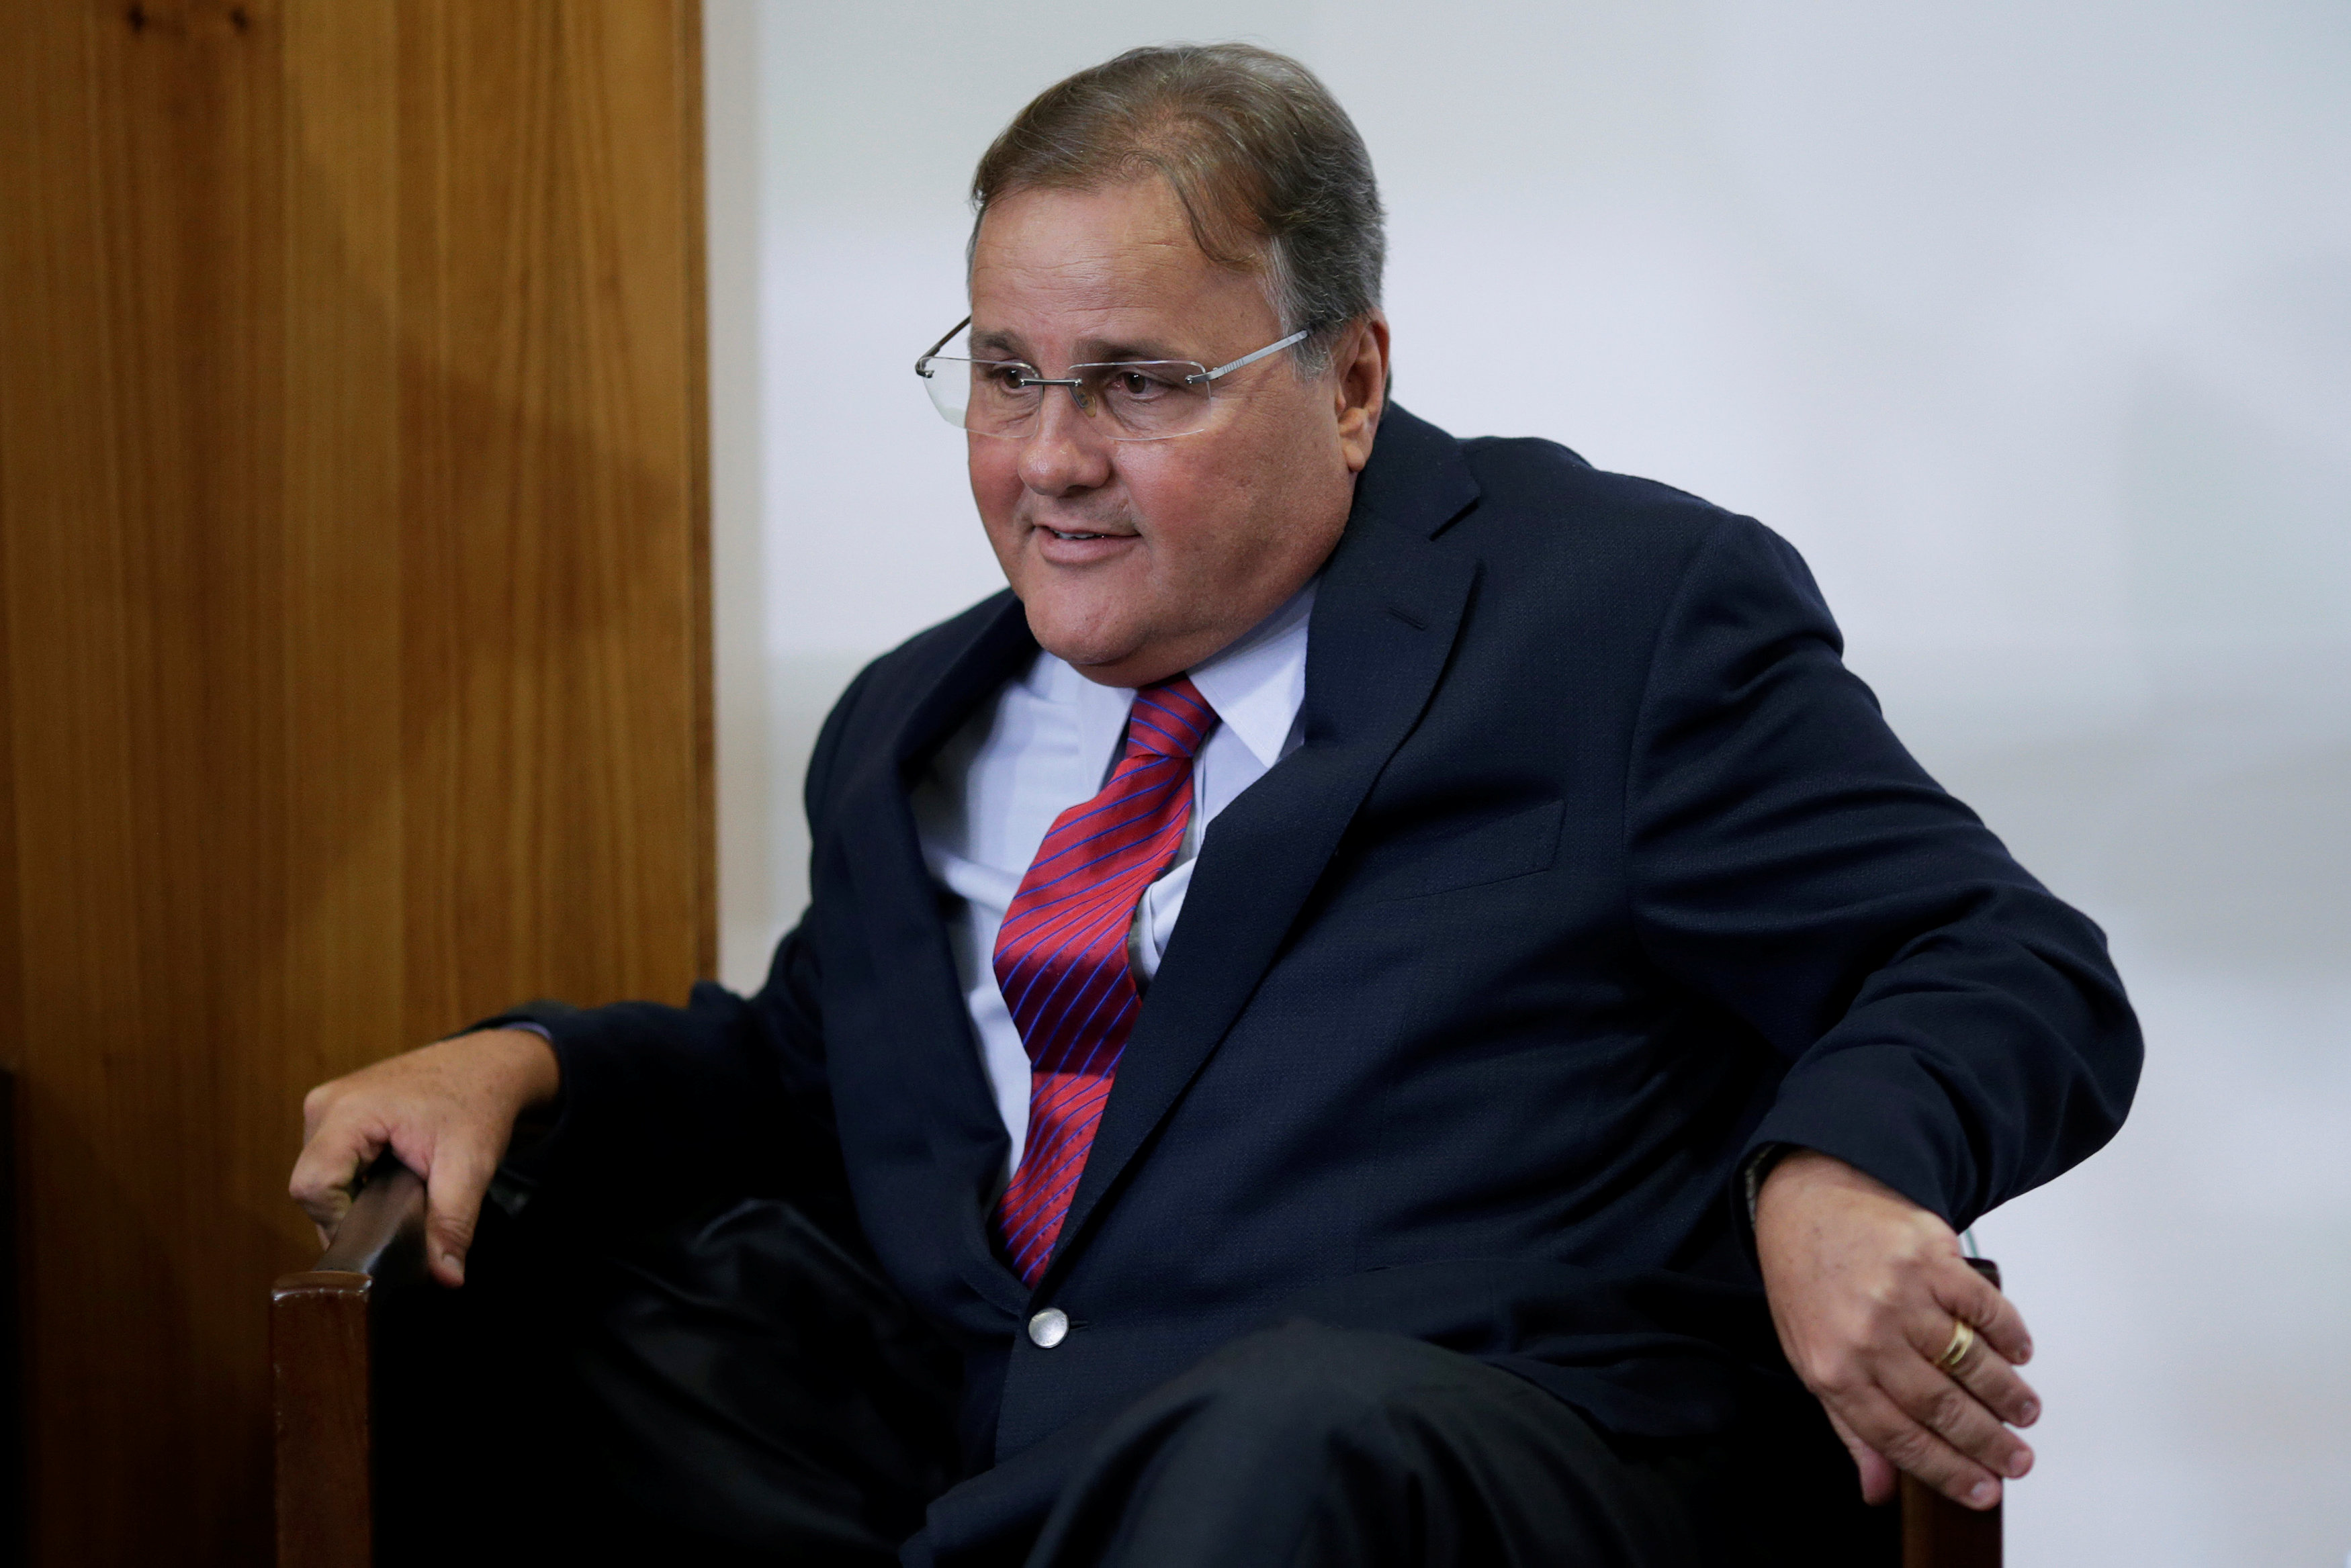 Παραίτηση υπουργού εν μέσω σκανδάλου στην κυβέρνηση της Βραζιλίας